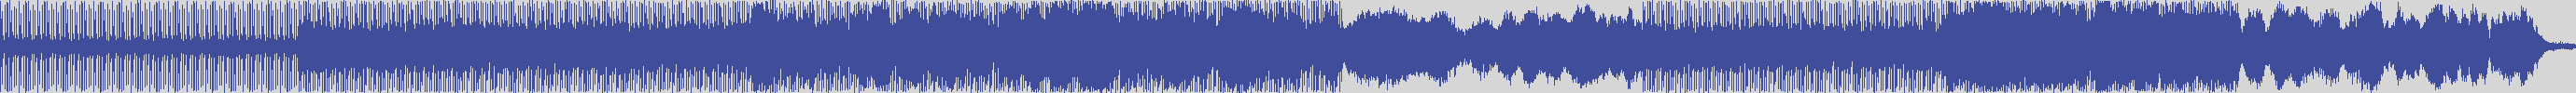 vitti_records [VIT011] Lion M - Wave72 [Original Mix] audio wave form